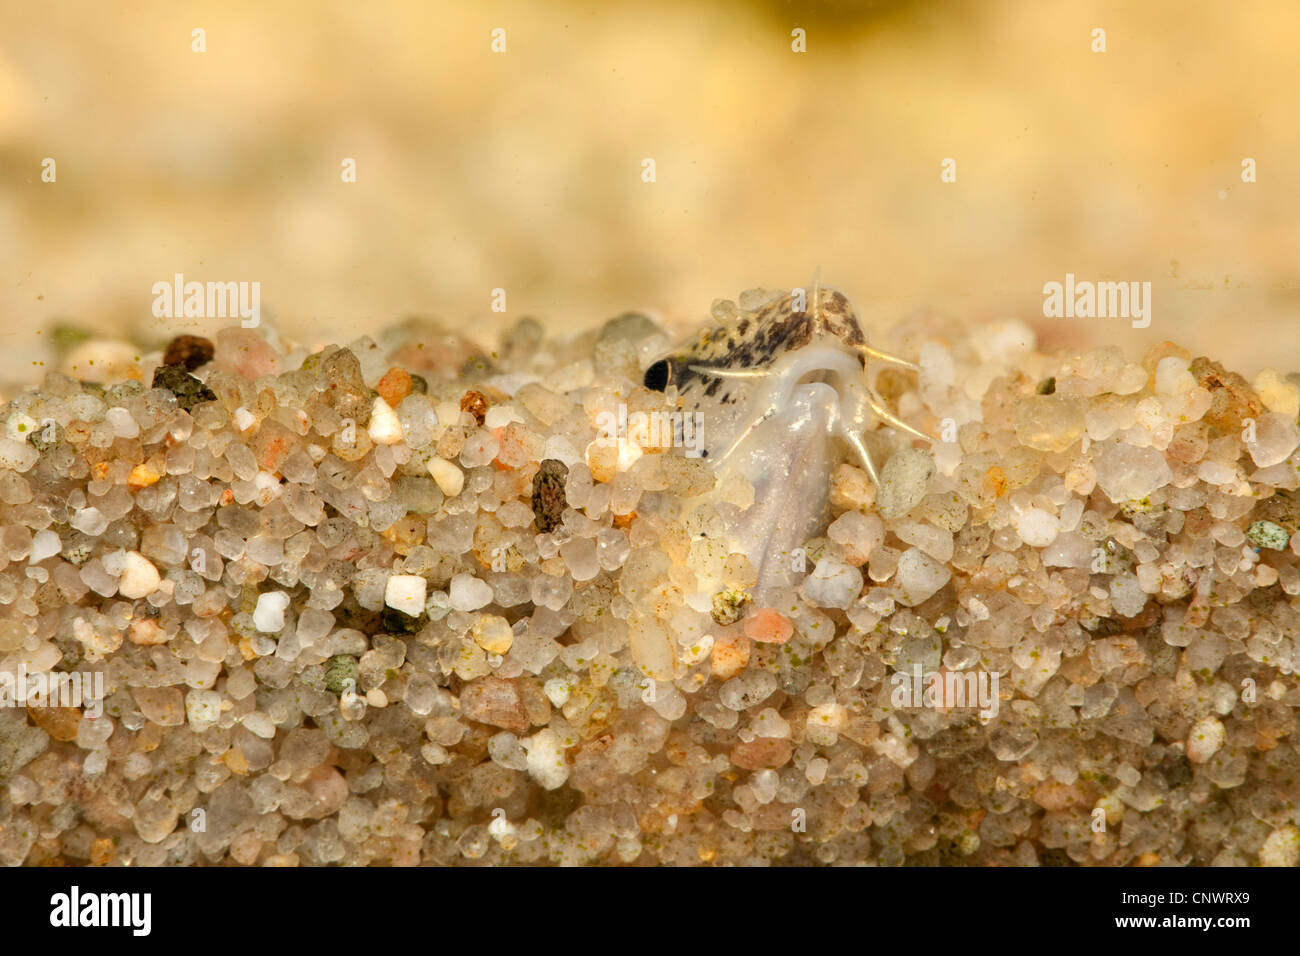 Golden loach (Cobitis aurata), pescado, excavados en la arena del suelo con la boca sobresalen Foto de stock